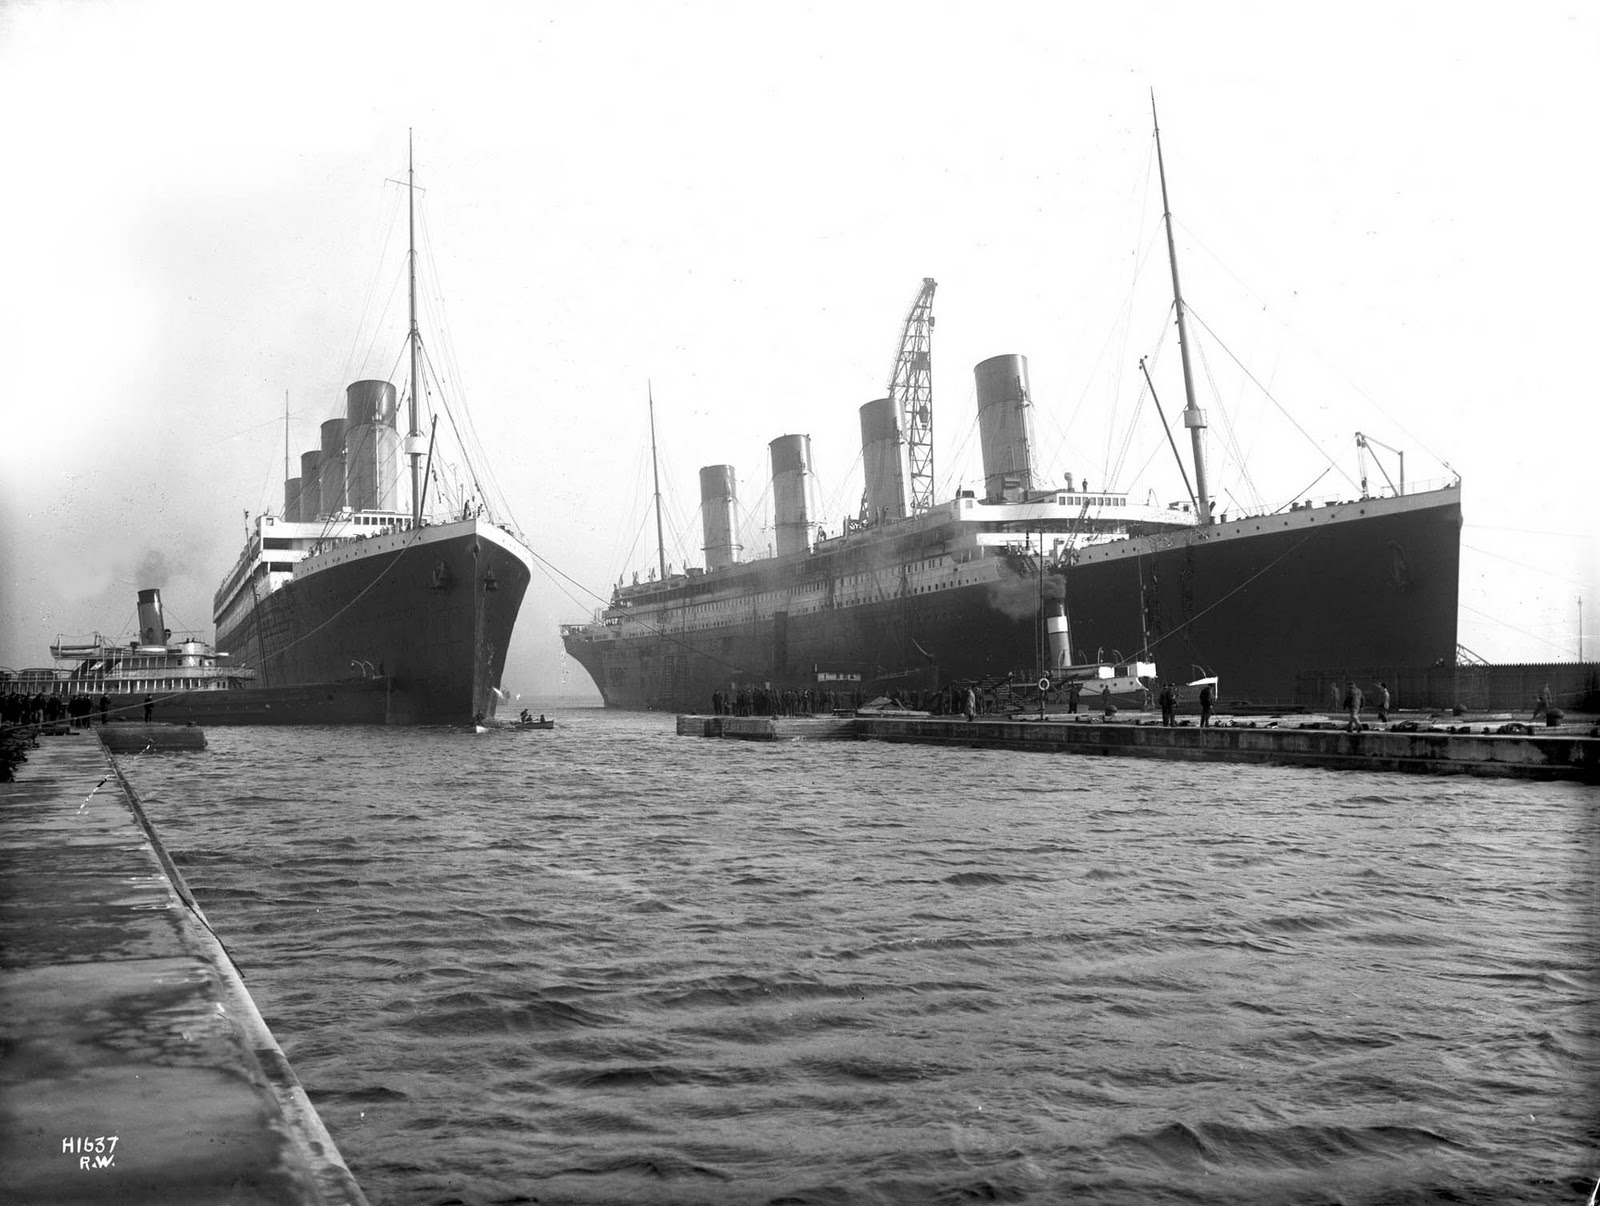 Imágenes históricas del Titanic 190662310